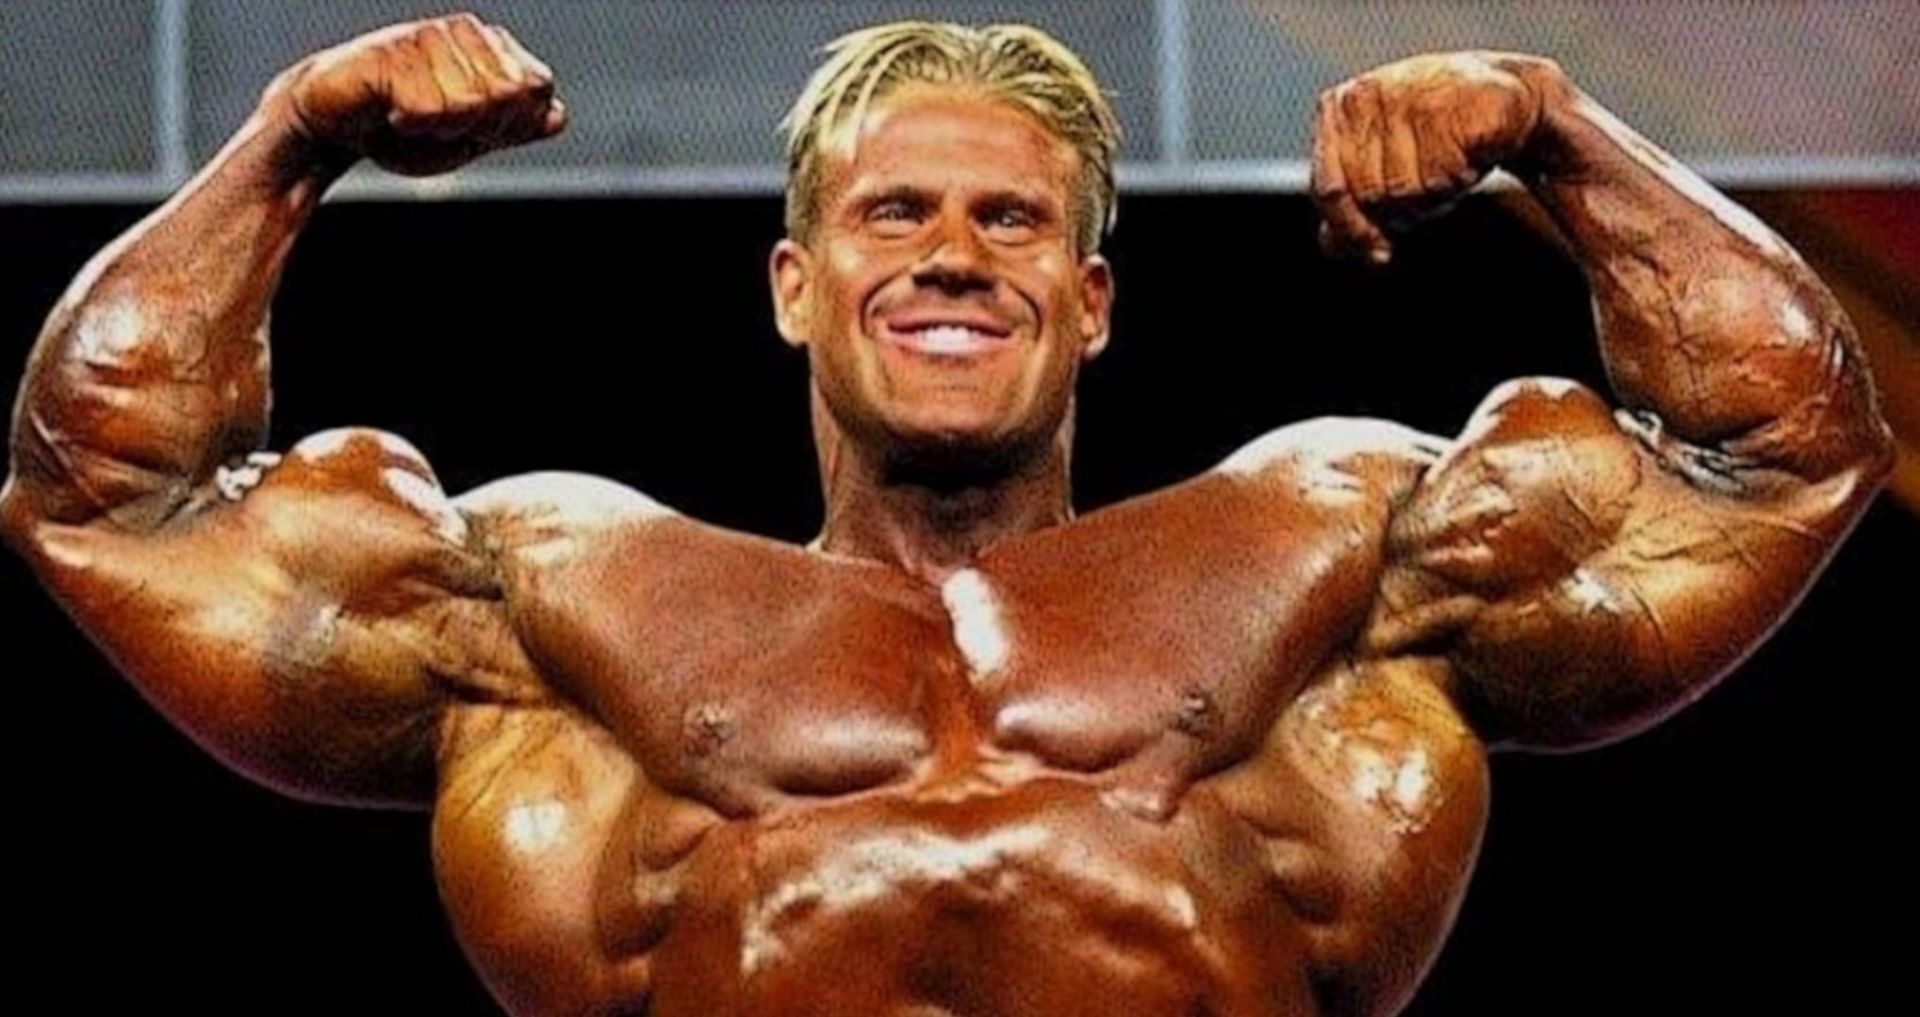 Stream Jay Cutler- I am the Greatest Bodybuilder Ever by Gym Hub